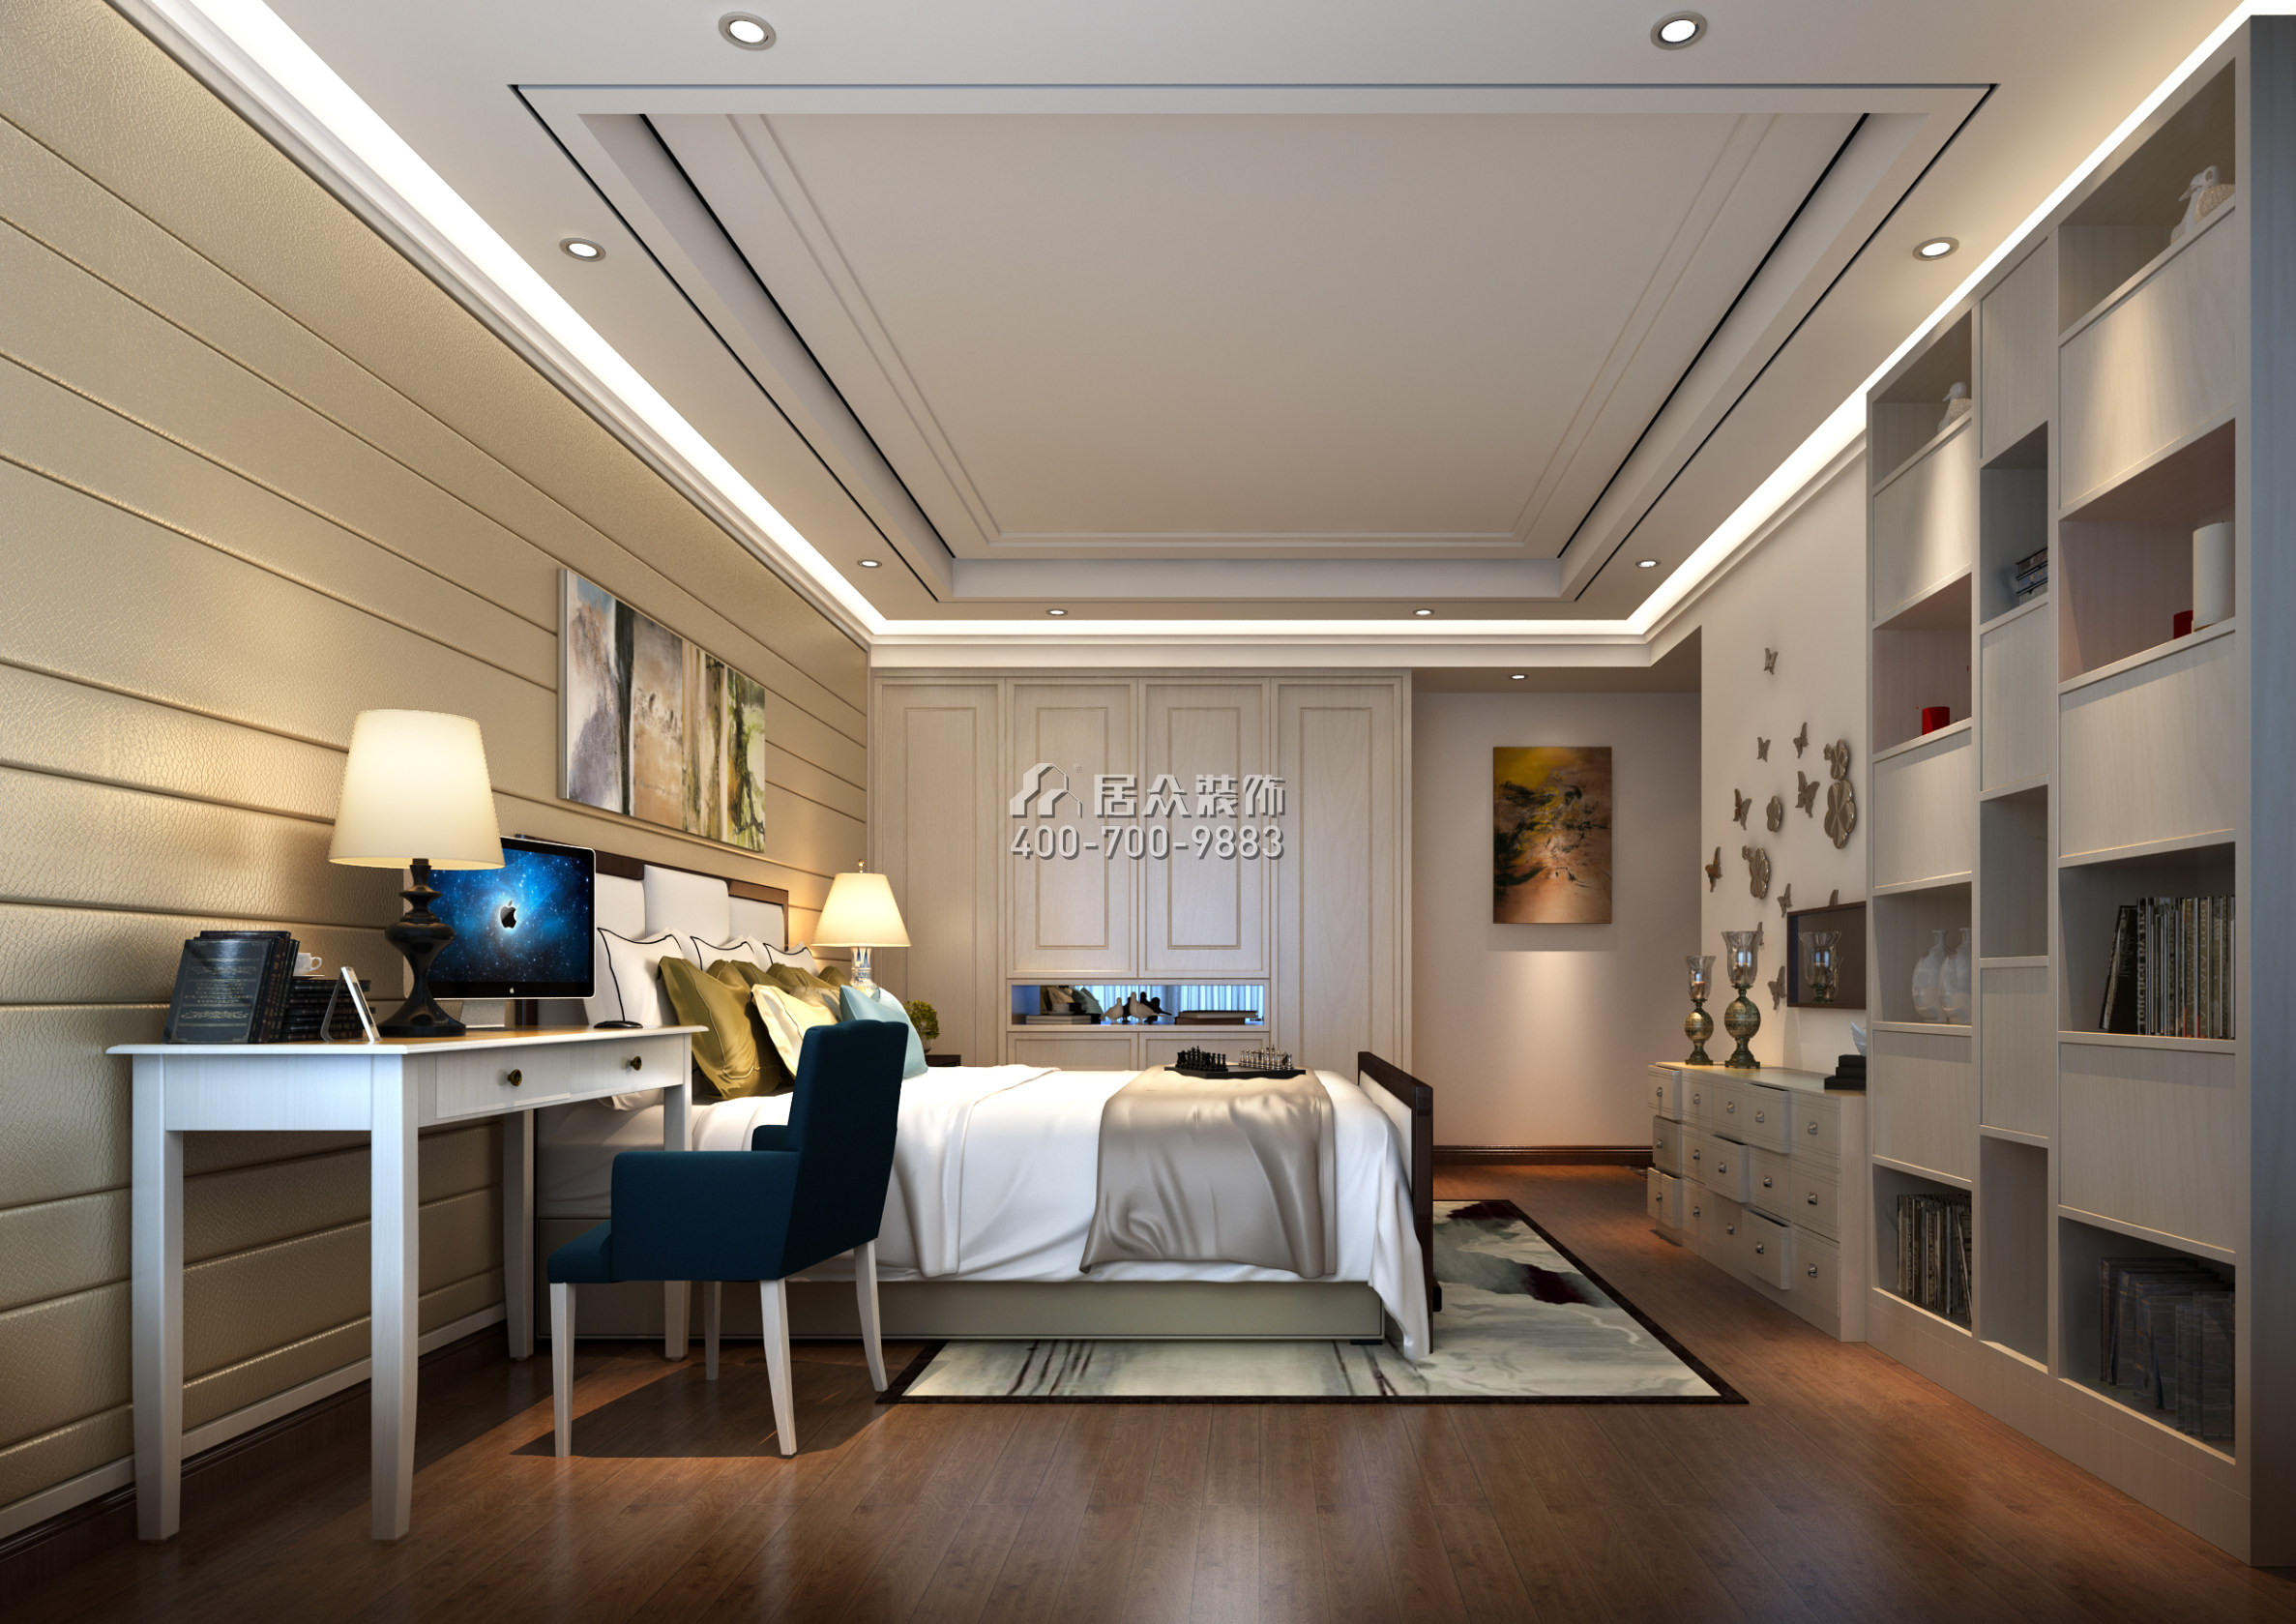 纯水岸十五期239平方米中式风格平层户型卧室装修效果图